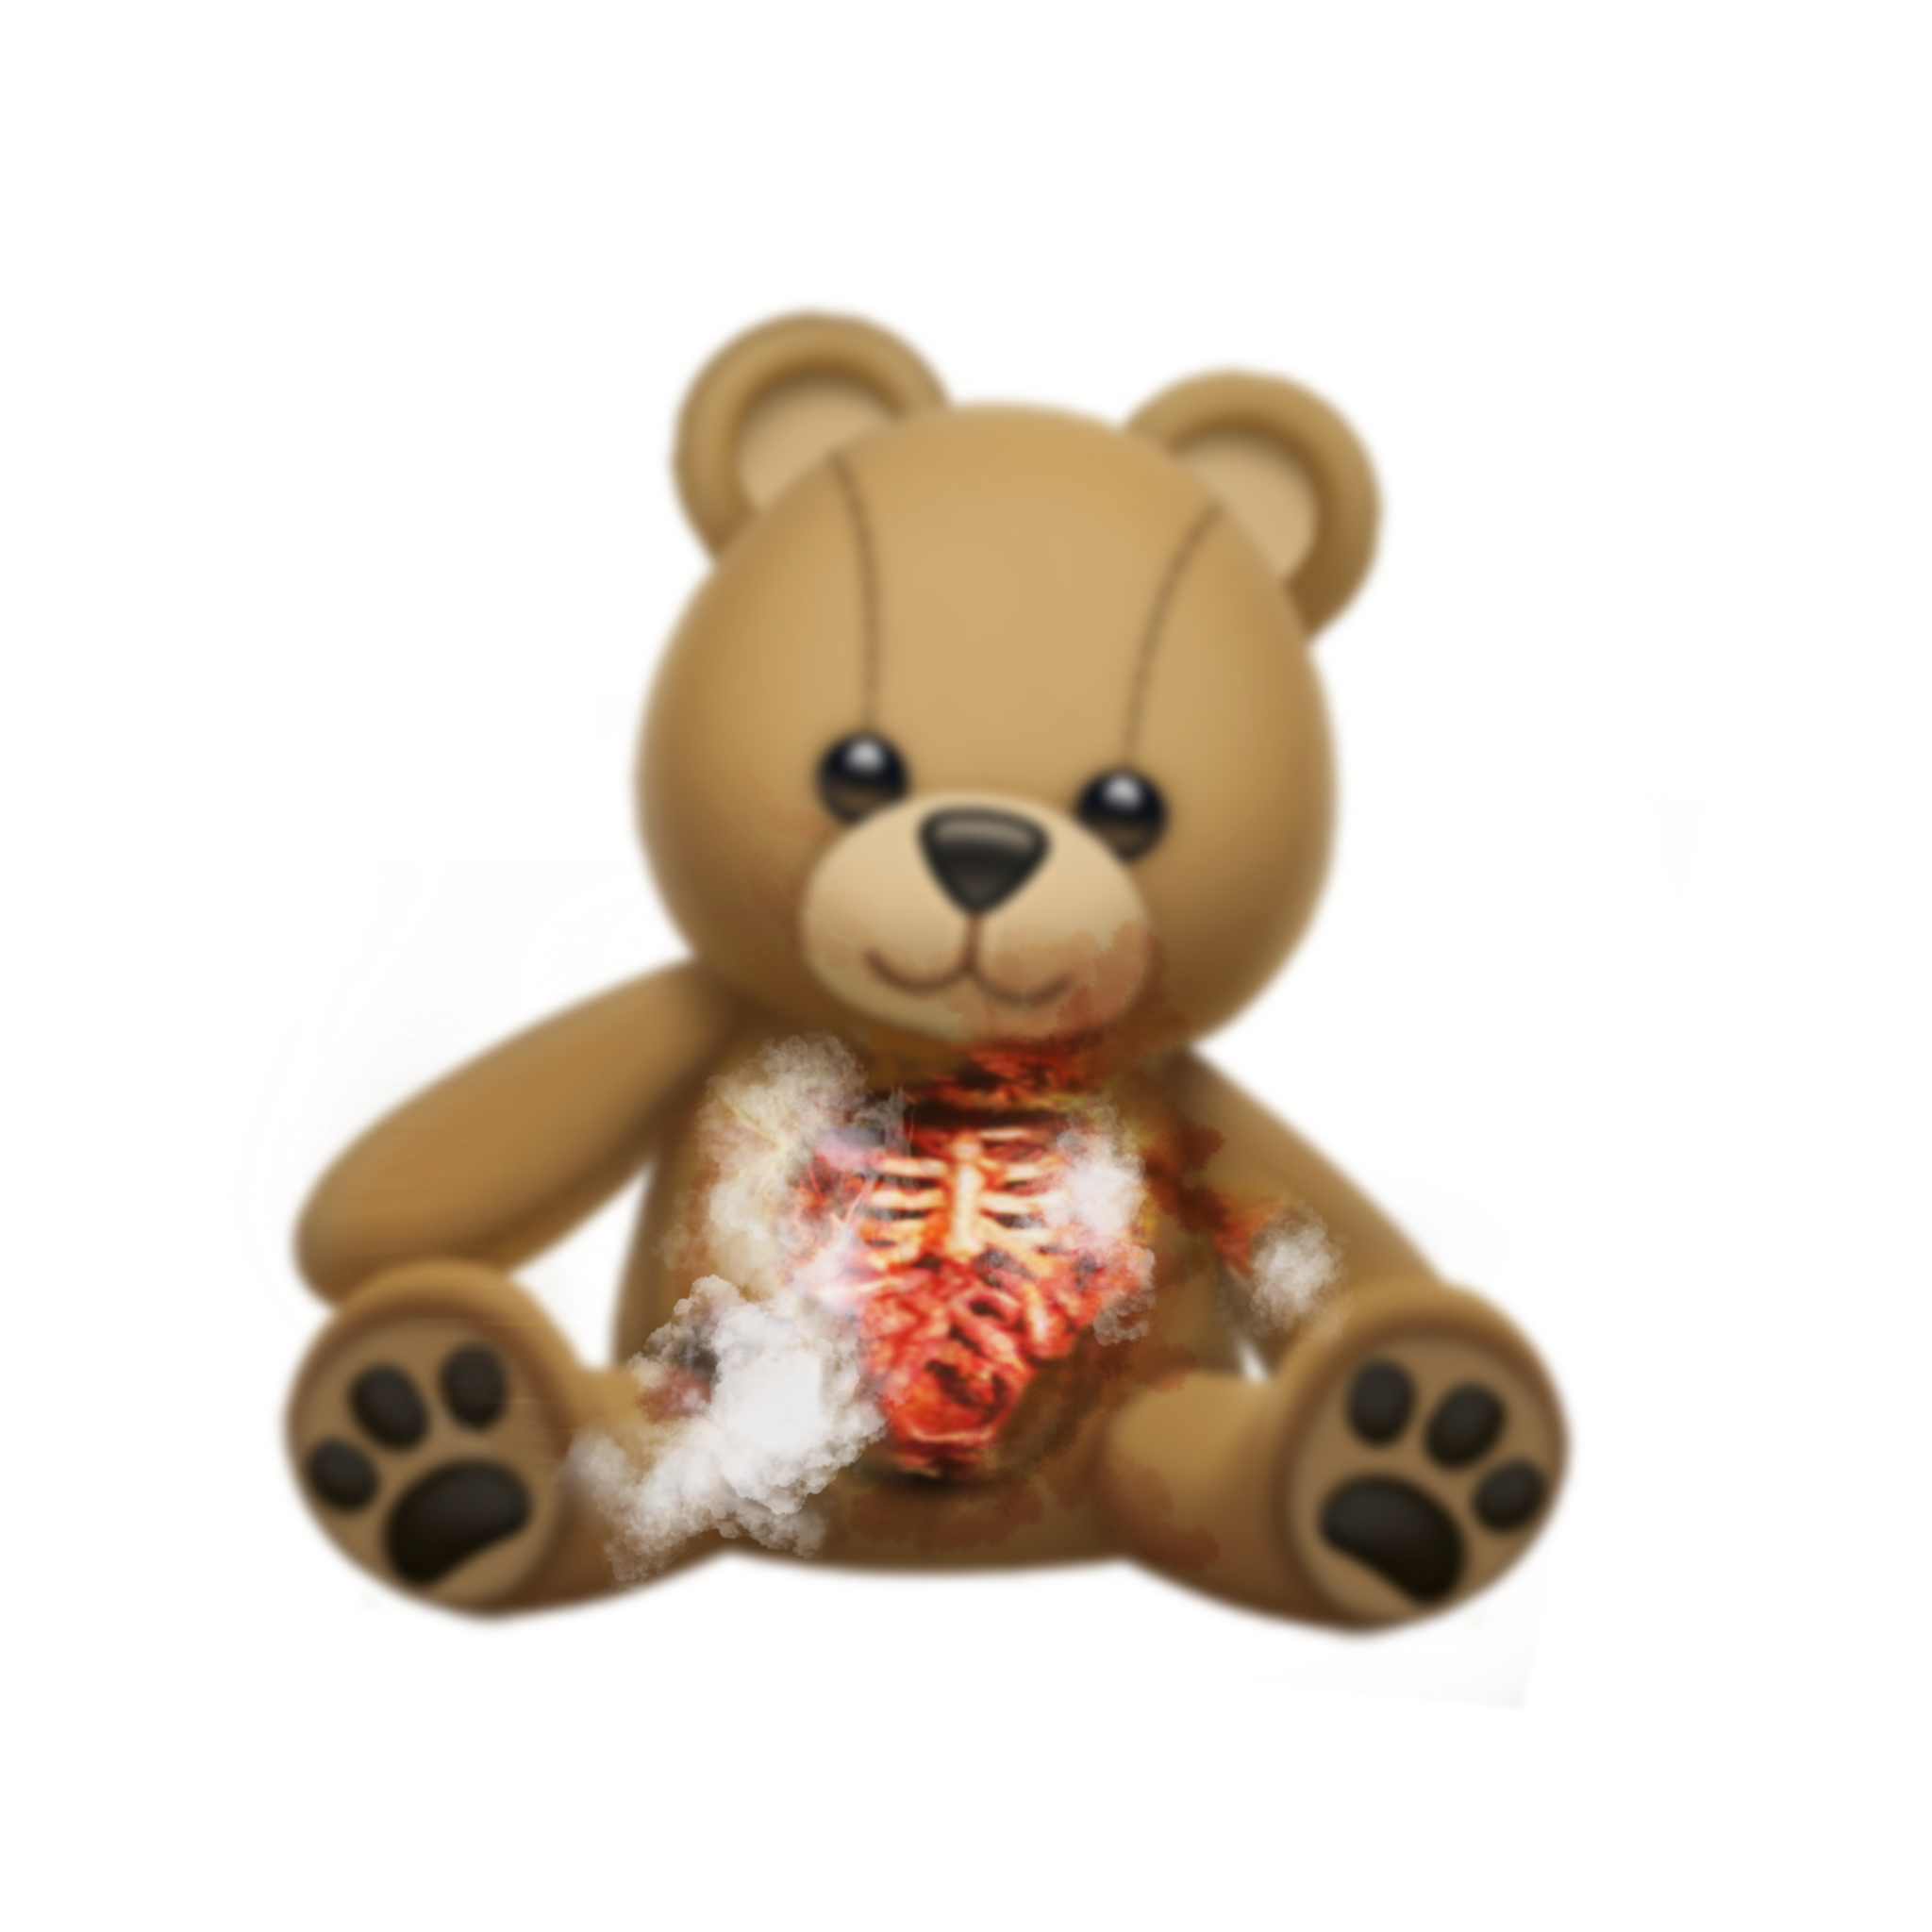 creepy cute teddy bear